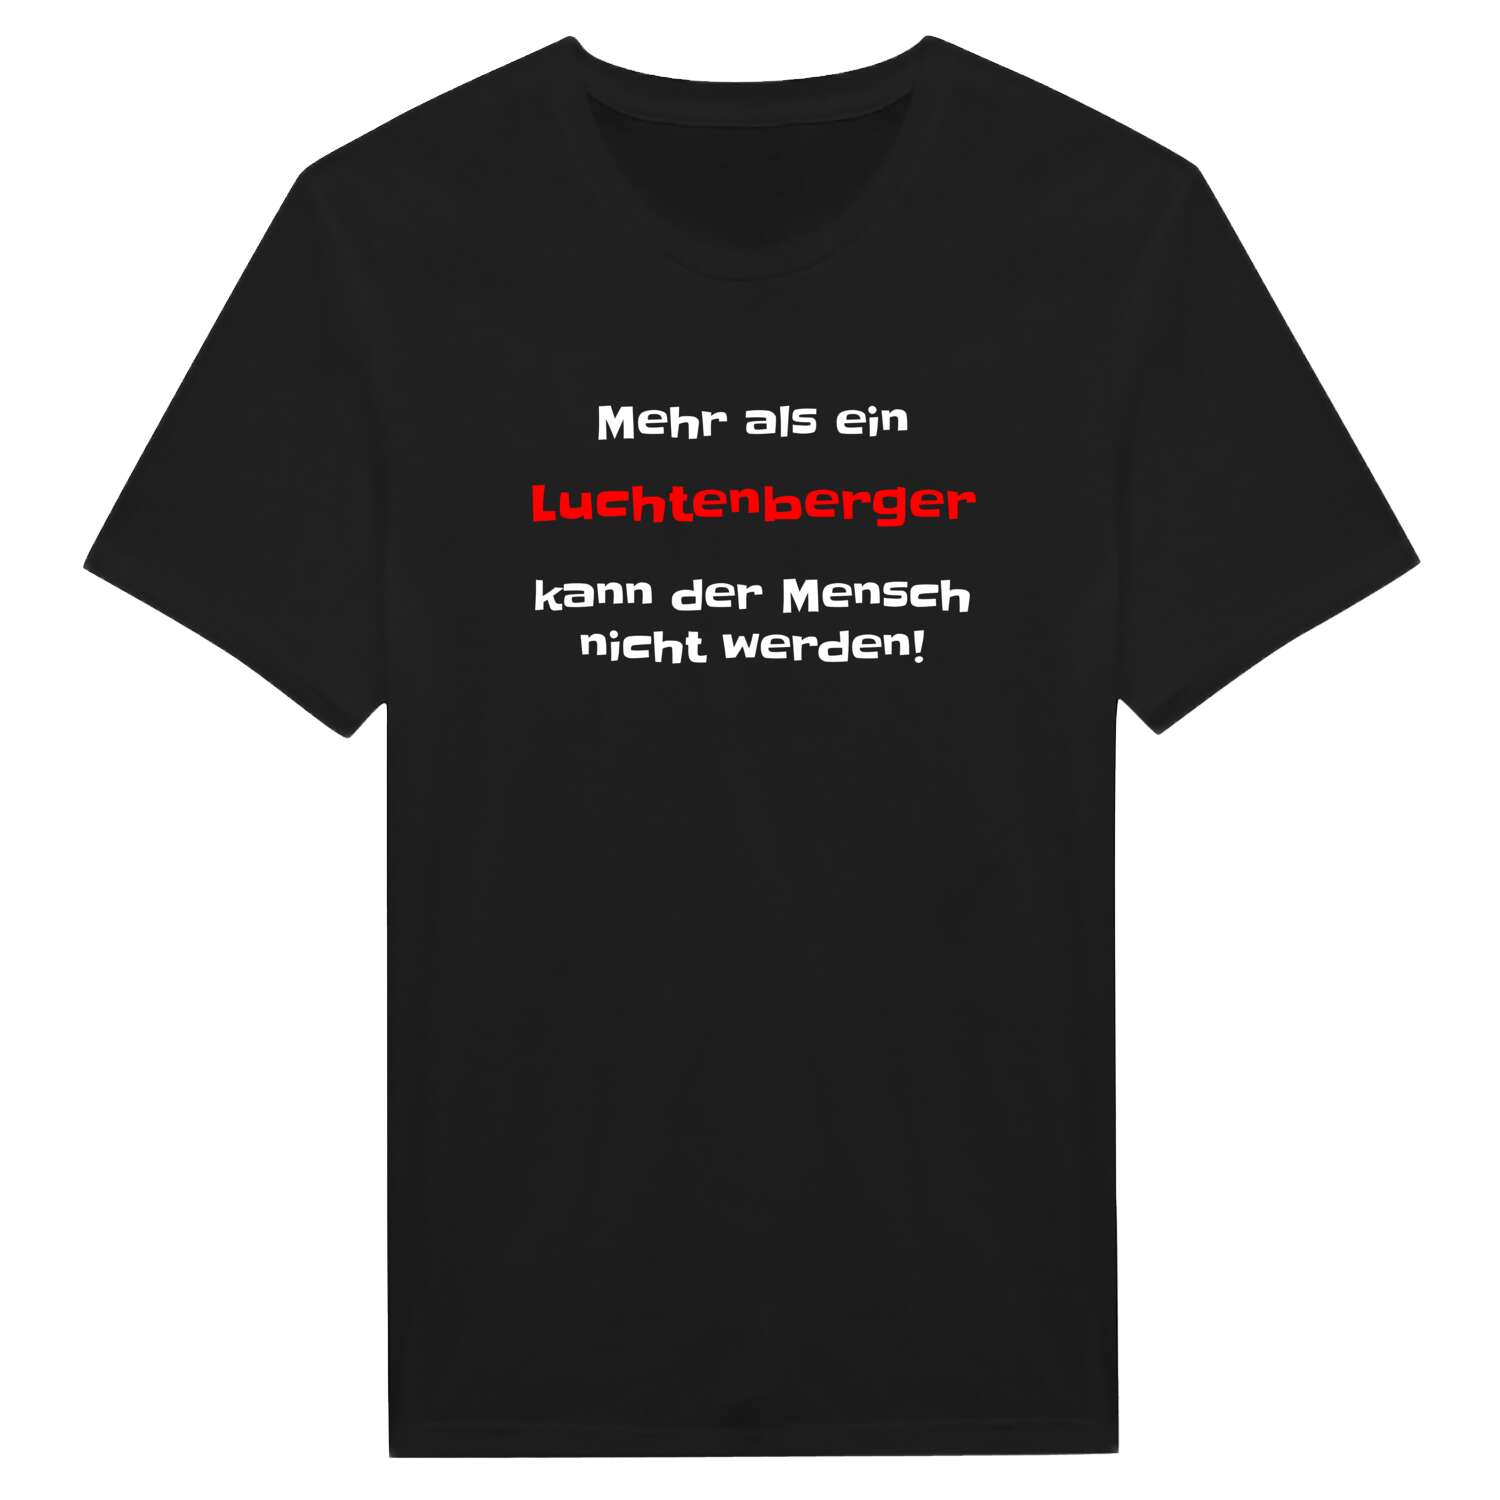 Luchtenberg T-Shirt »Mehr als ein«